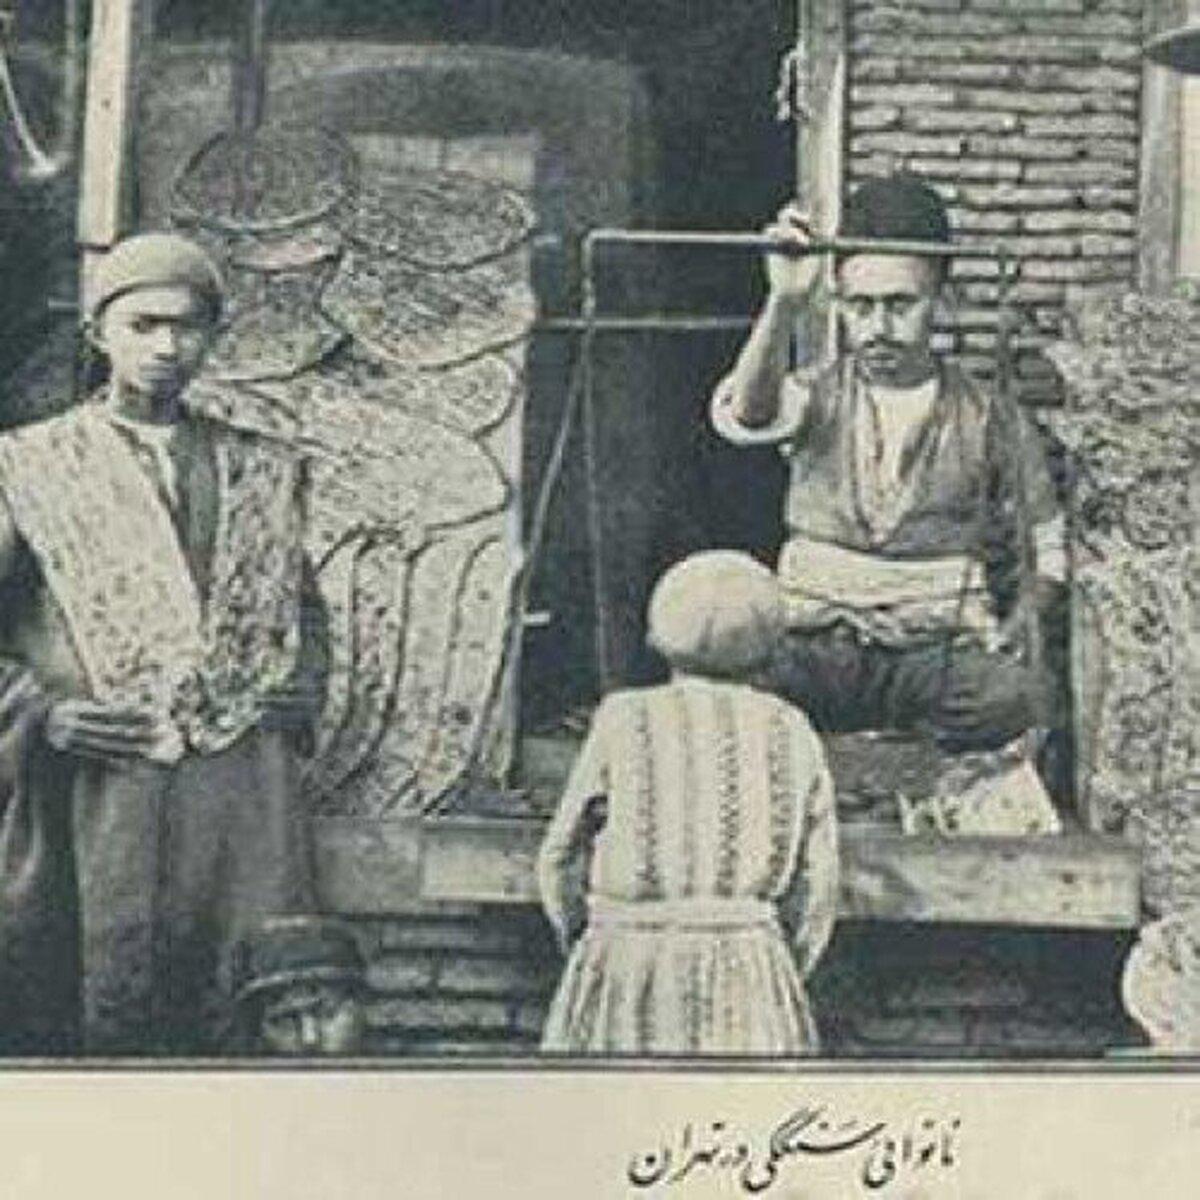 کسادی بازار نان خراسانی و بربری/رونق کماج طرشتی در رمضان تهران قدیم